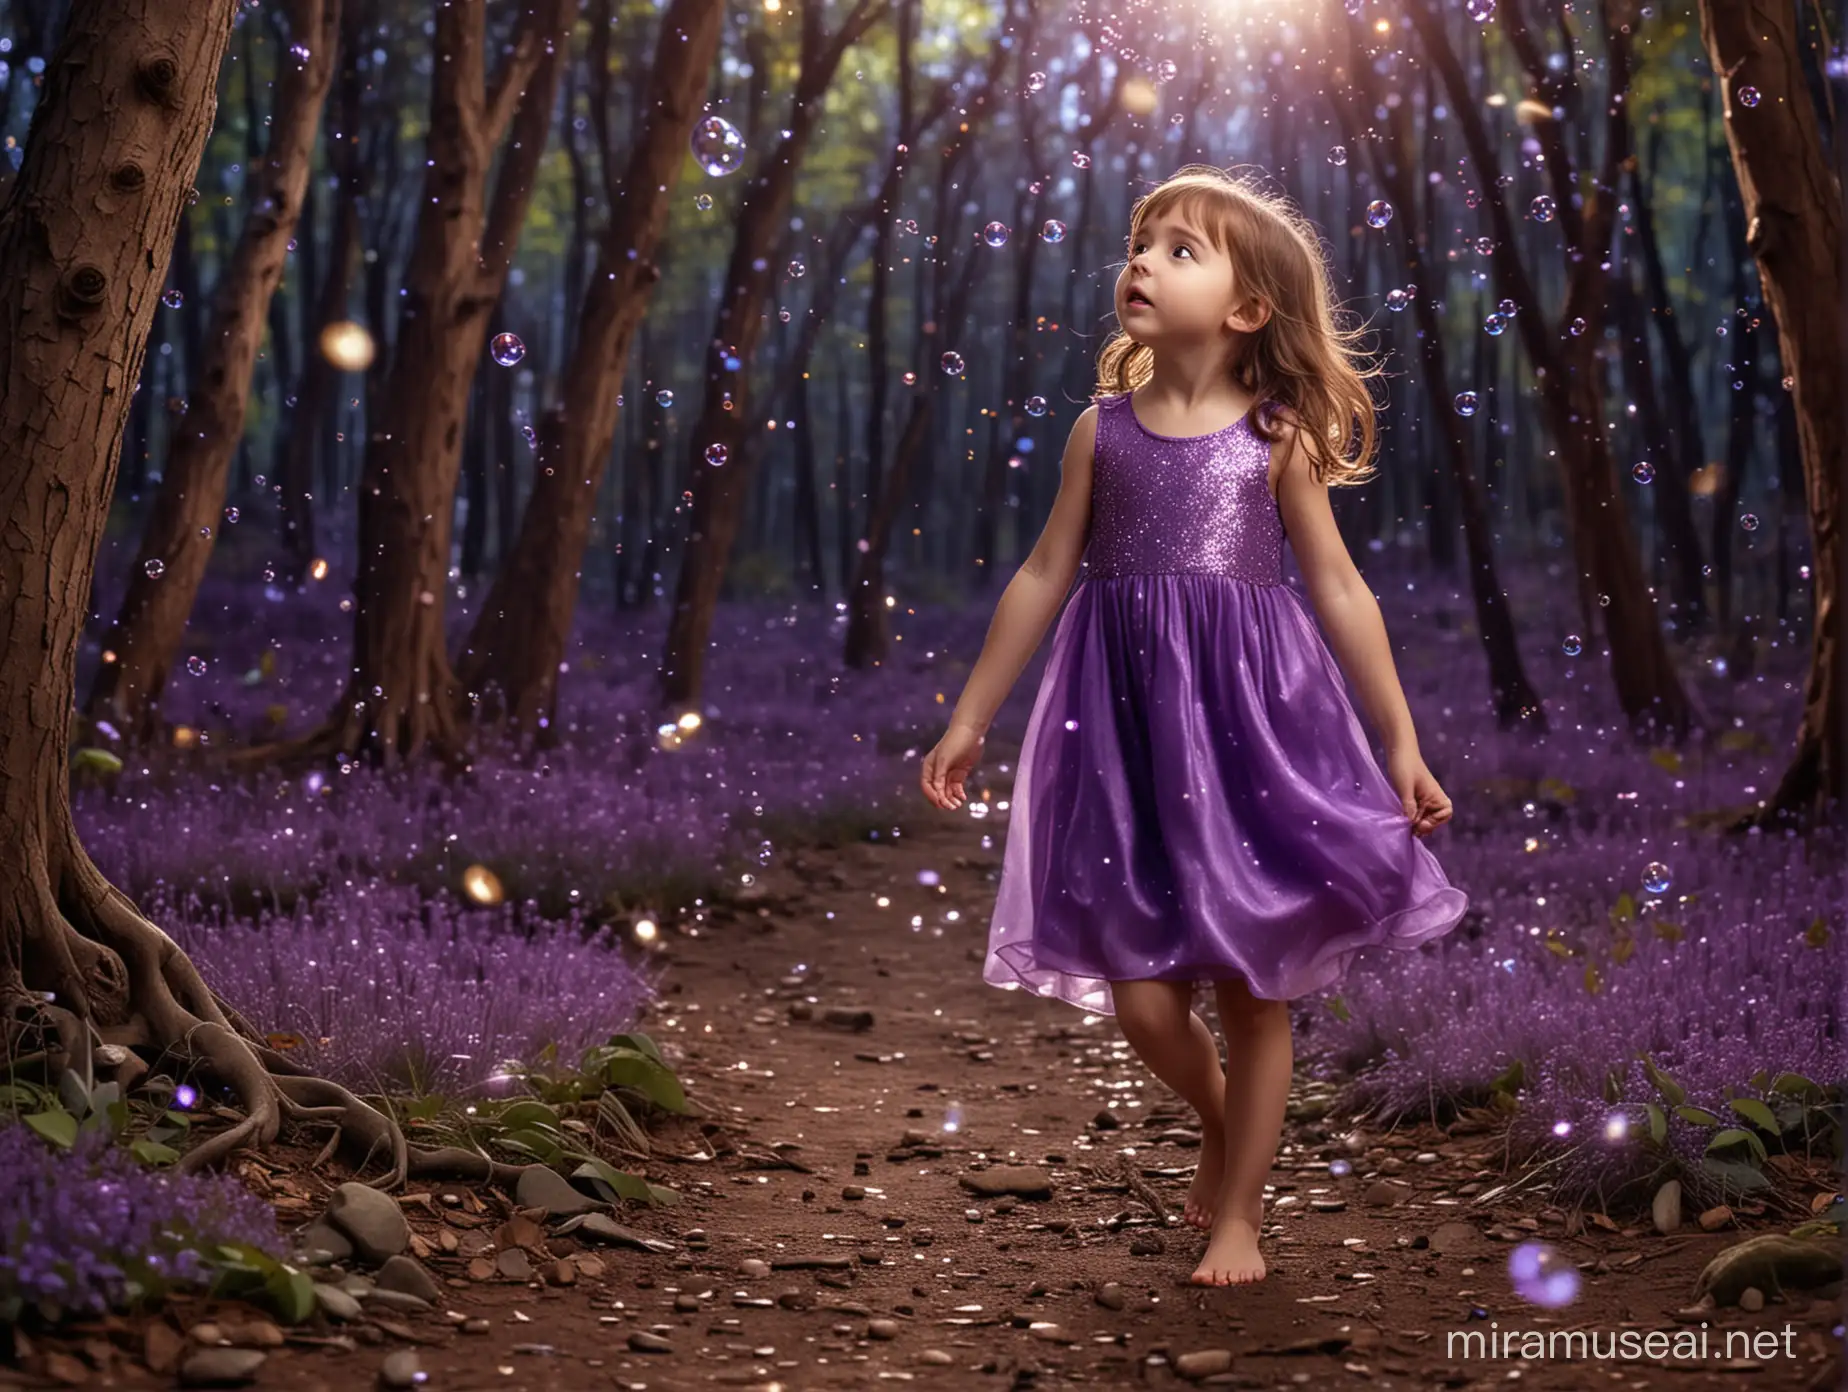 petite fille 6 ans cheveux châtain qui regarde ses pieds nus. Elle a une robe violette sans manches, simple, brillante. Elle a l'air surprise. elle est dans une forêt enchantée magique féérique la nuit lumineuse avec des paillettes qui volent partout, des bulles, des fées. Image fournie en magie